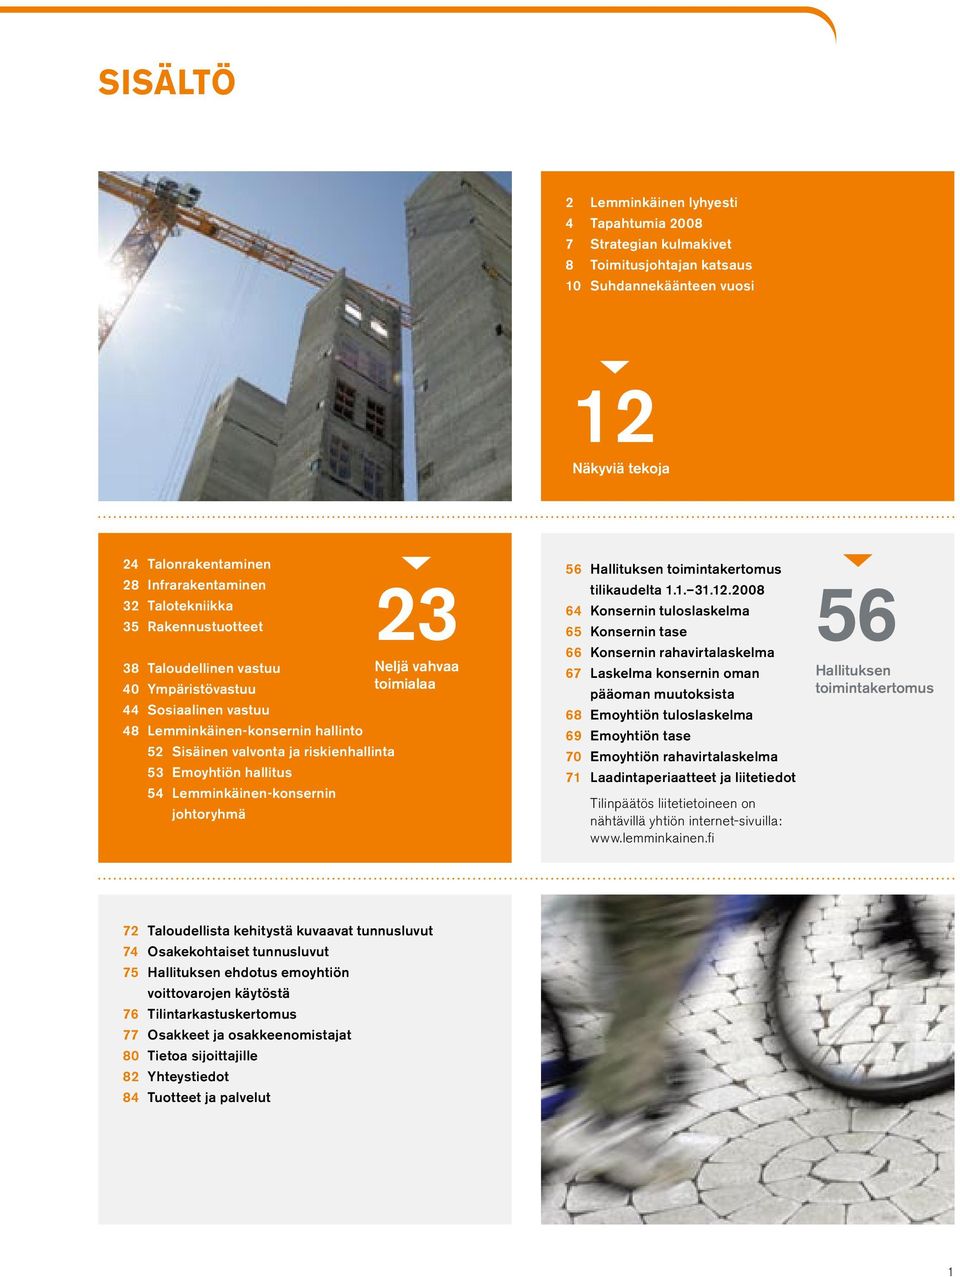 Lemminkäinen-konsernin johtoryhmä 23 Neljä vahvaa toimialaa 56 Hallituksen toimintakertomus tilikaudelta 1.1. 31.12.